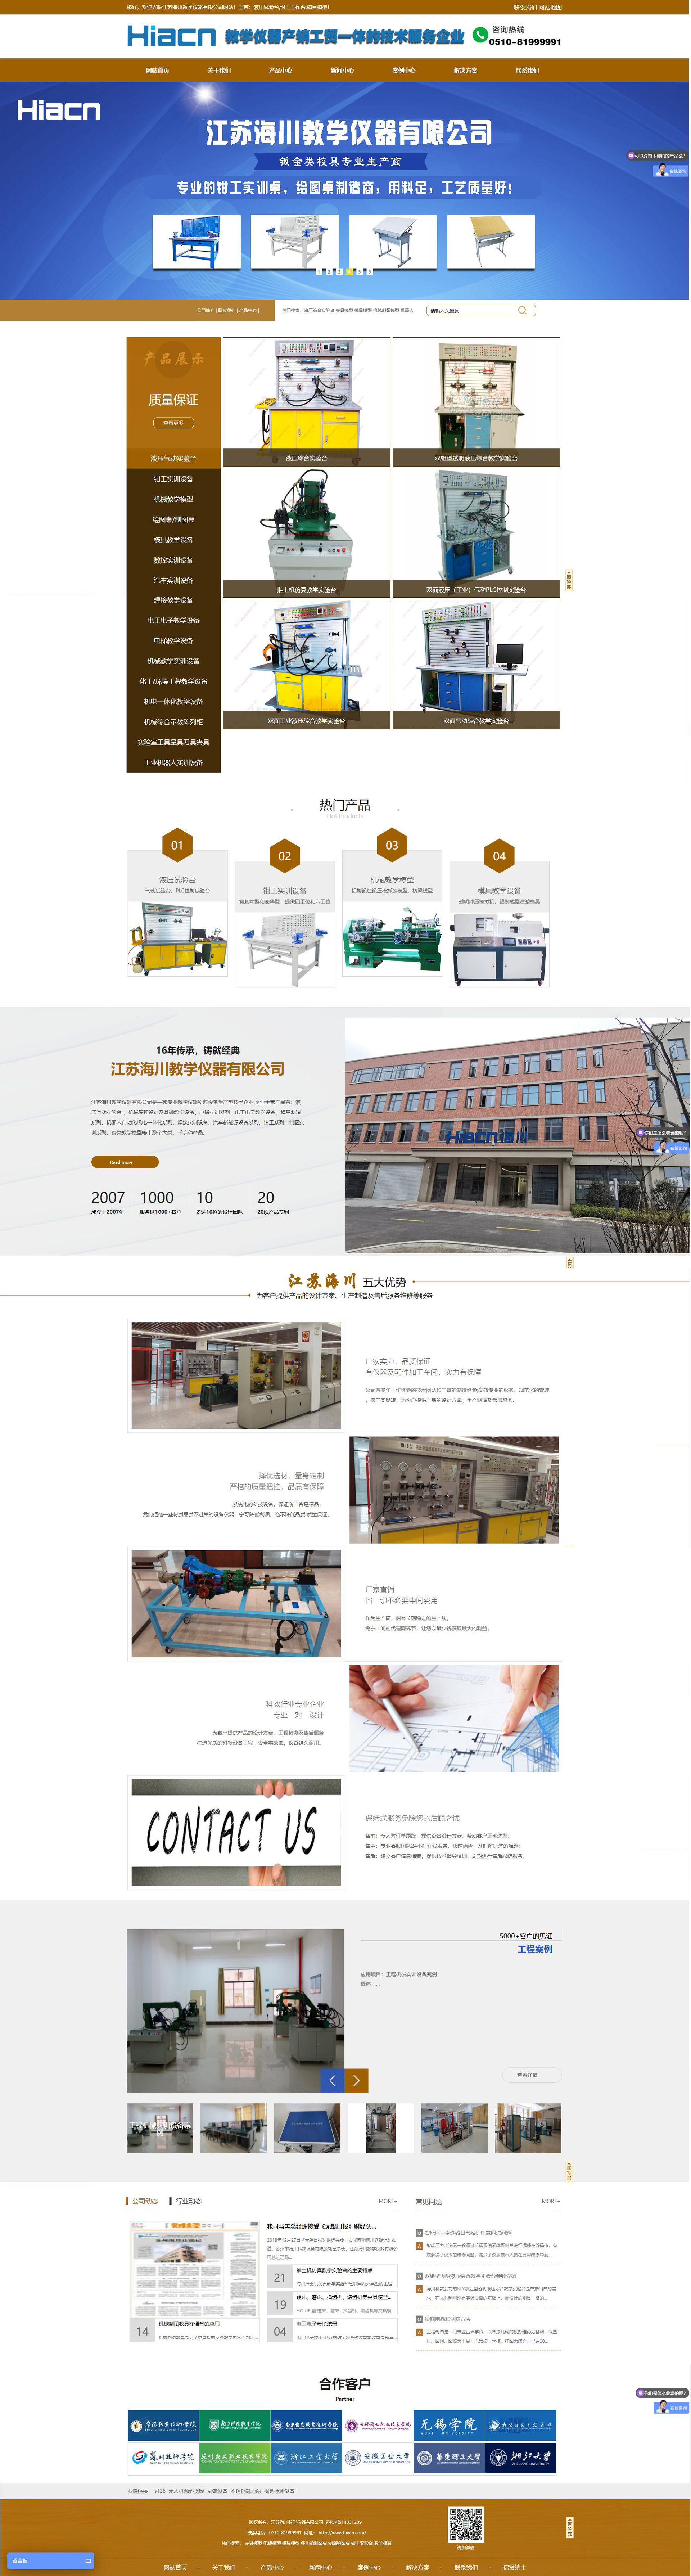 江苏海川教学仪器 网站建设案例